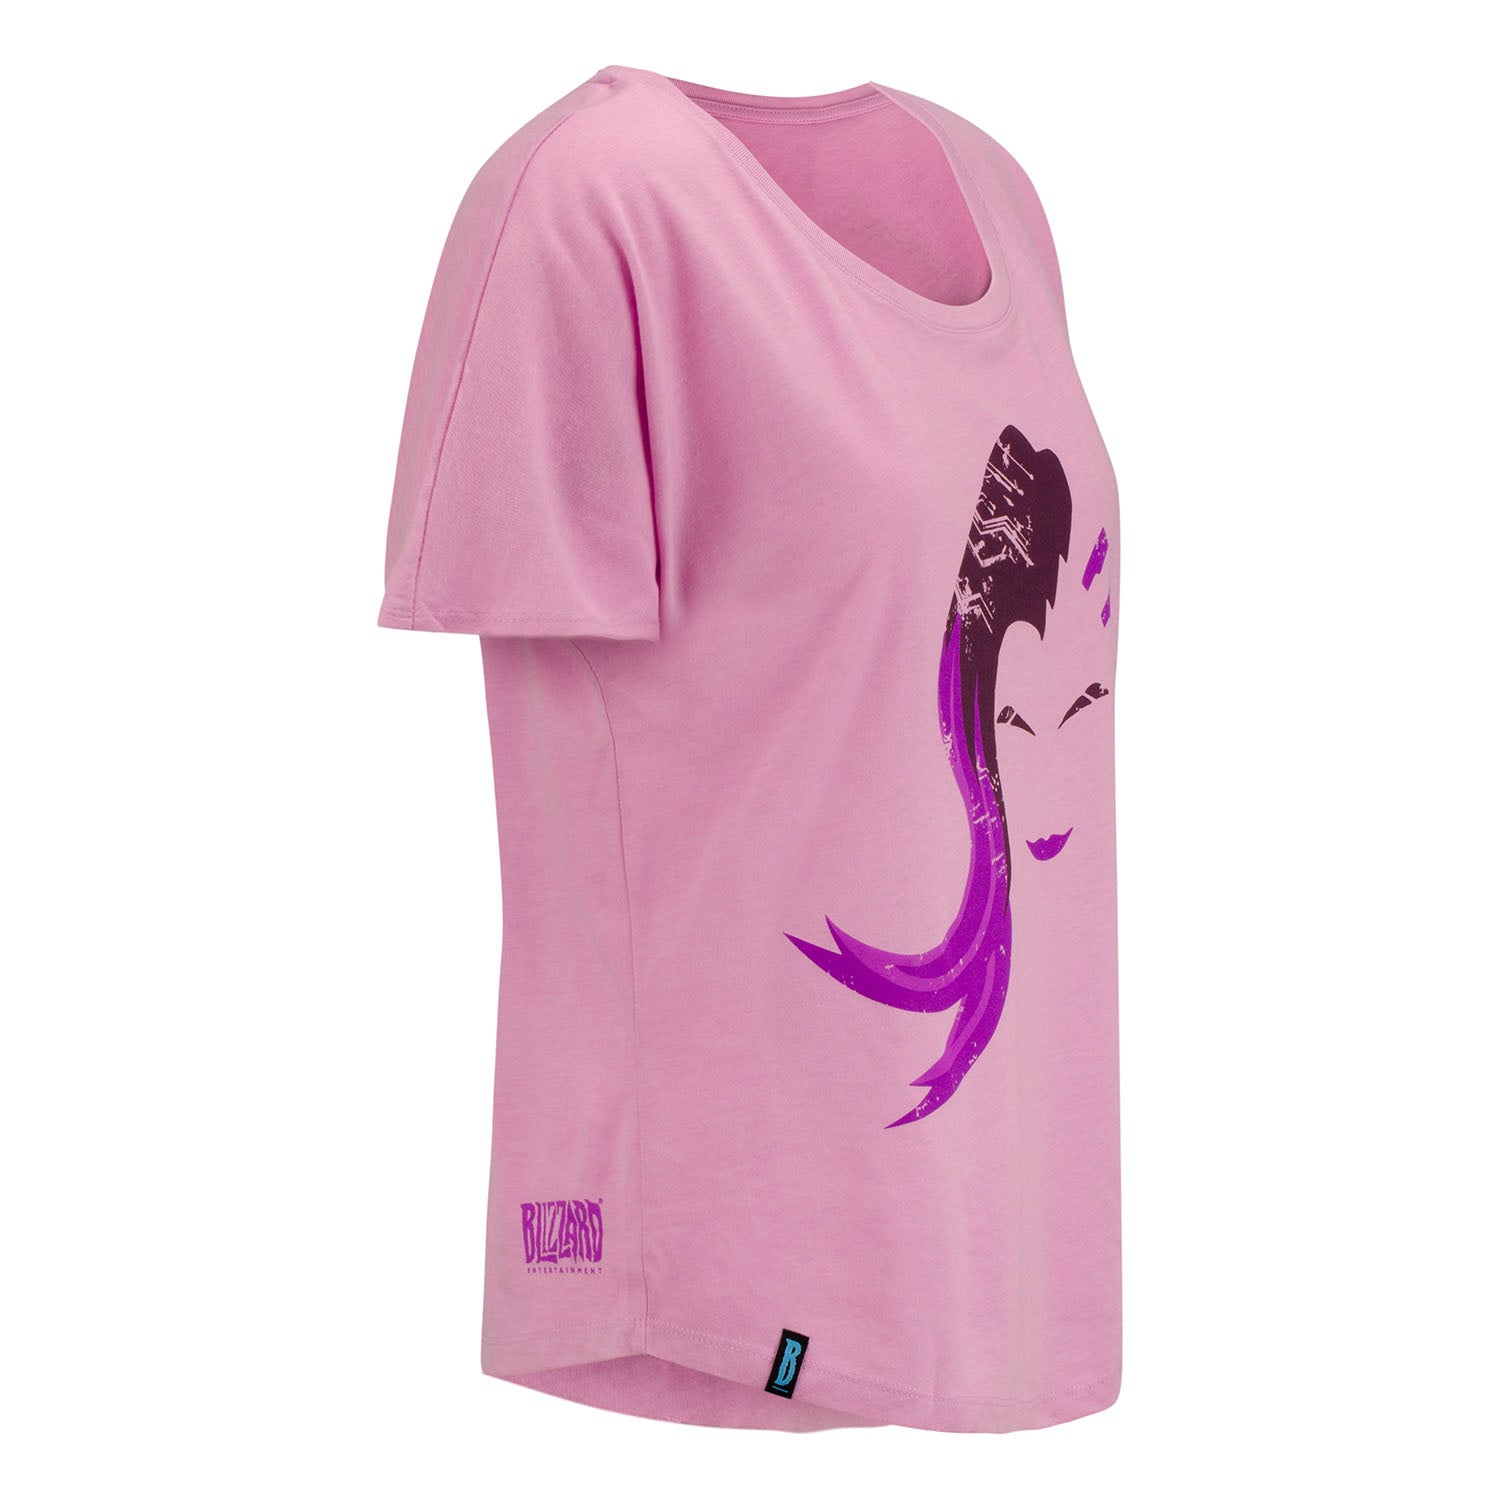 Overwatch Sombra Women's Pink Scoop Neck T-Shirt - Right View